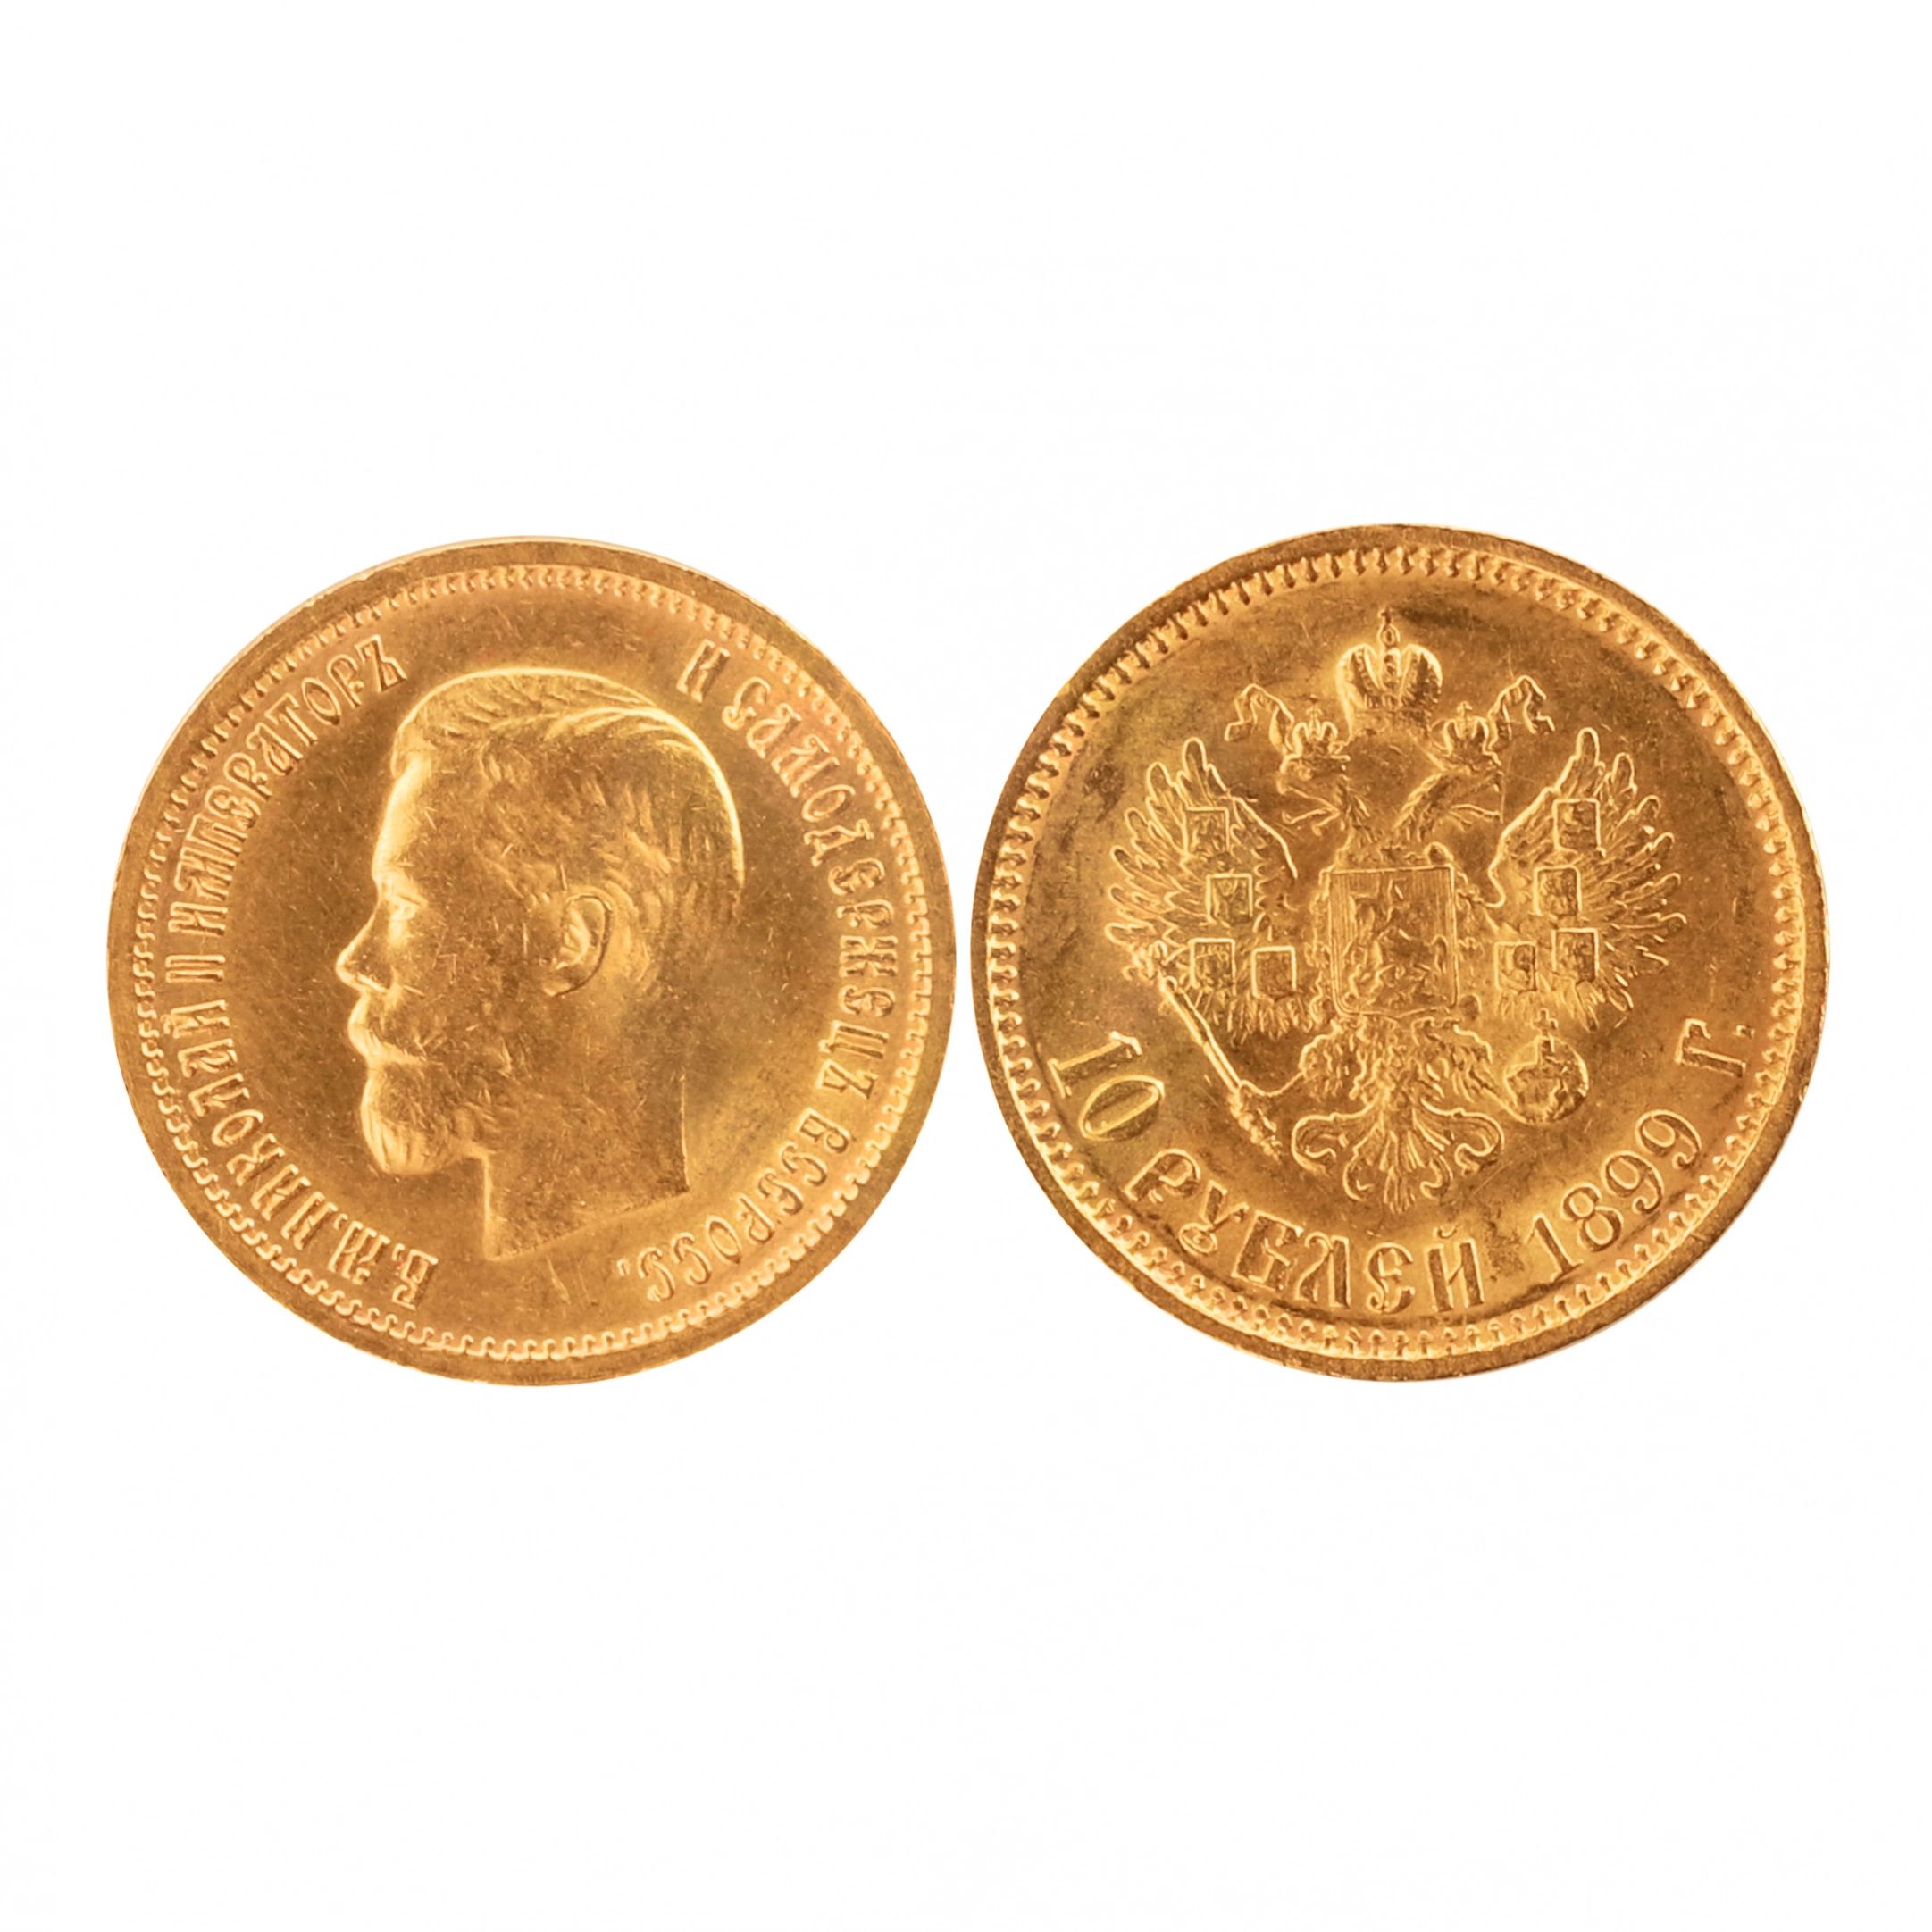 Zelta-10-rublu-moneta-1899